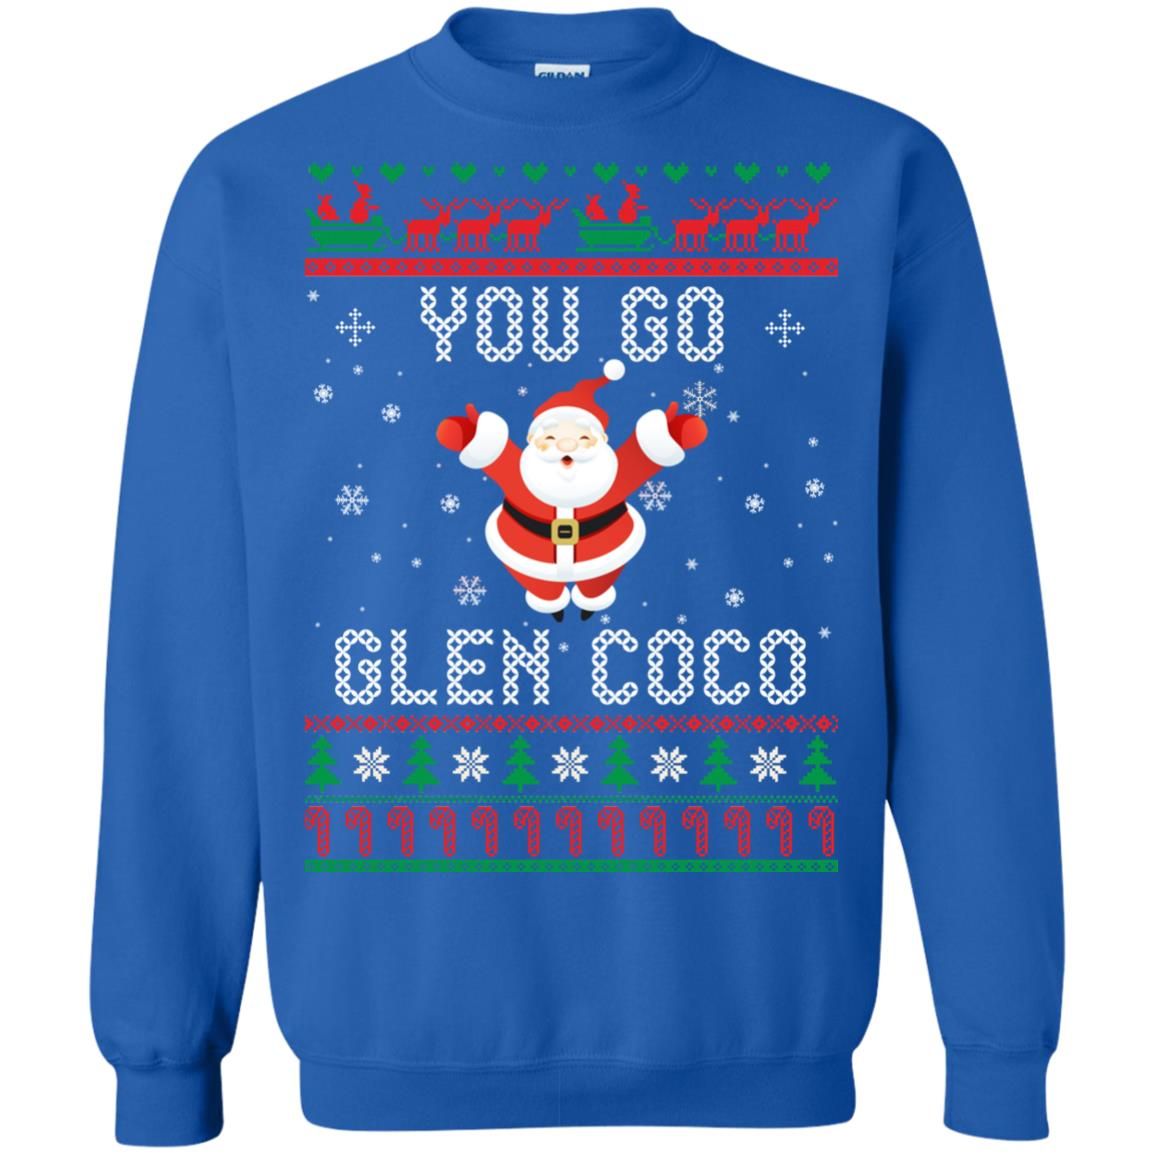 You Go Glen Coco Santa Claus Lover Christmas Sweatshirt Style: Sweatshirt, Color: Blue